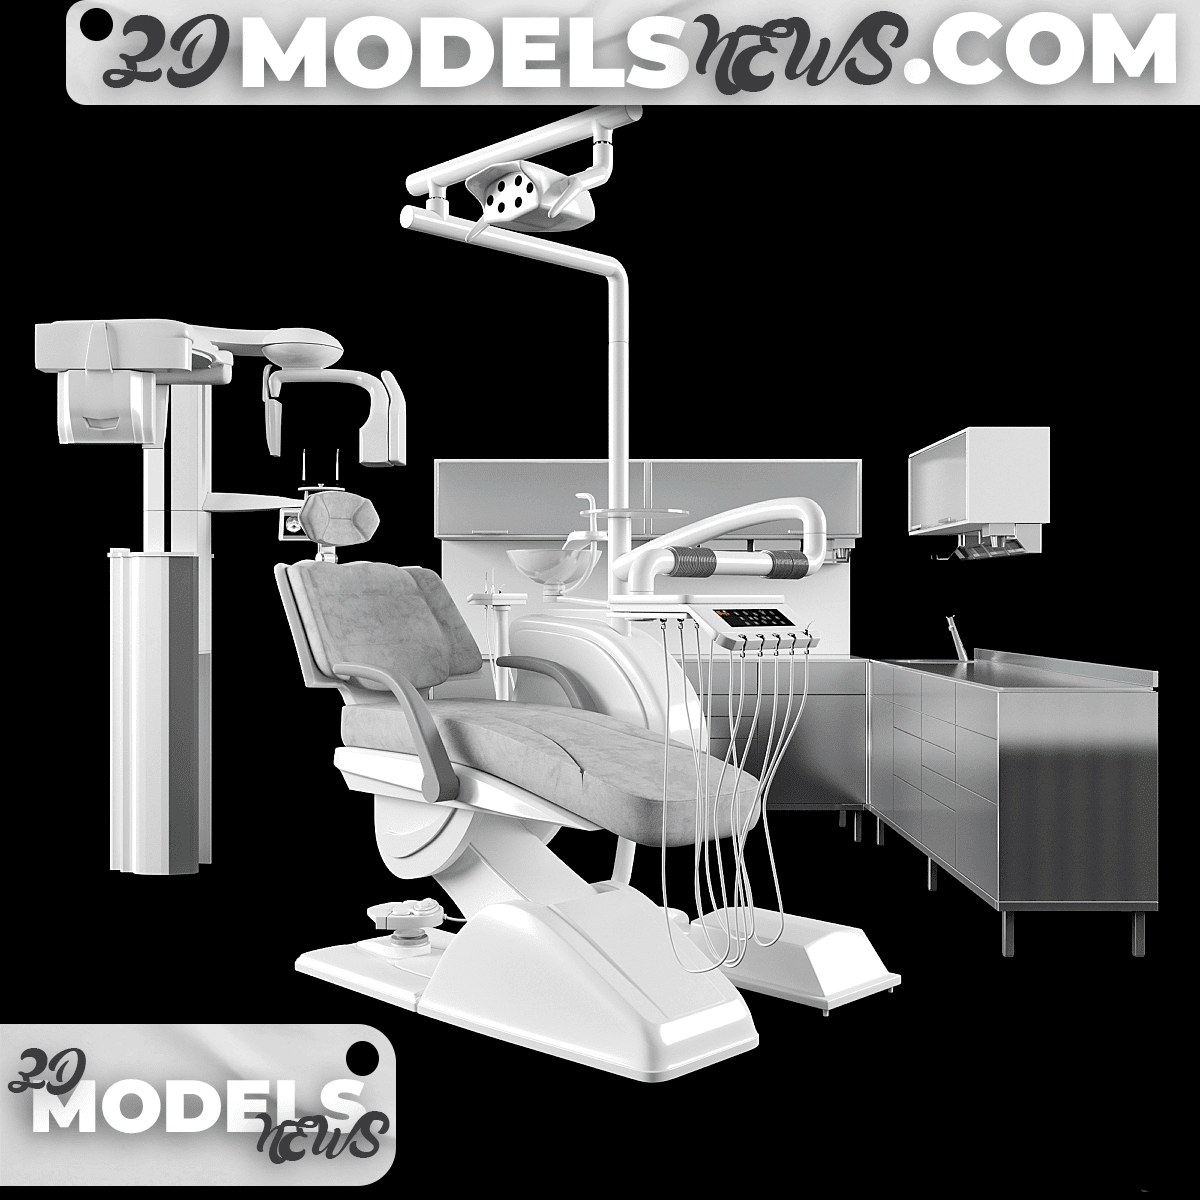 Equipment model for dentistry 1